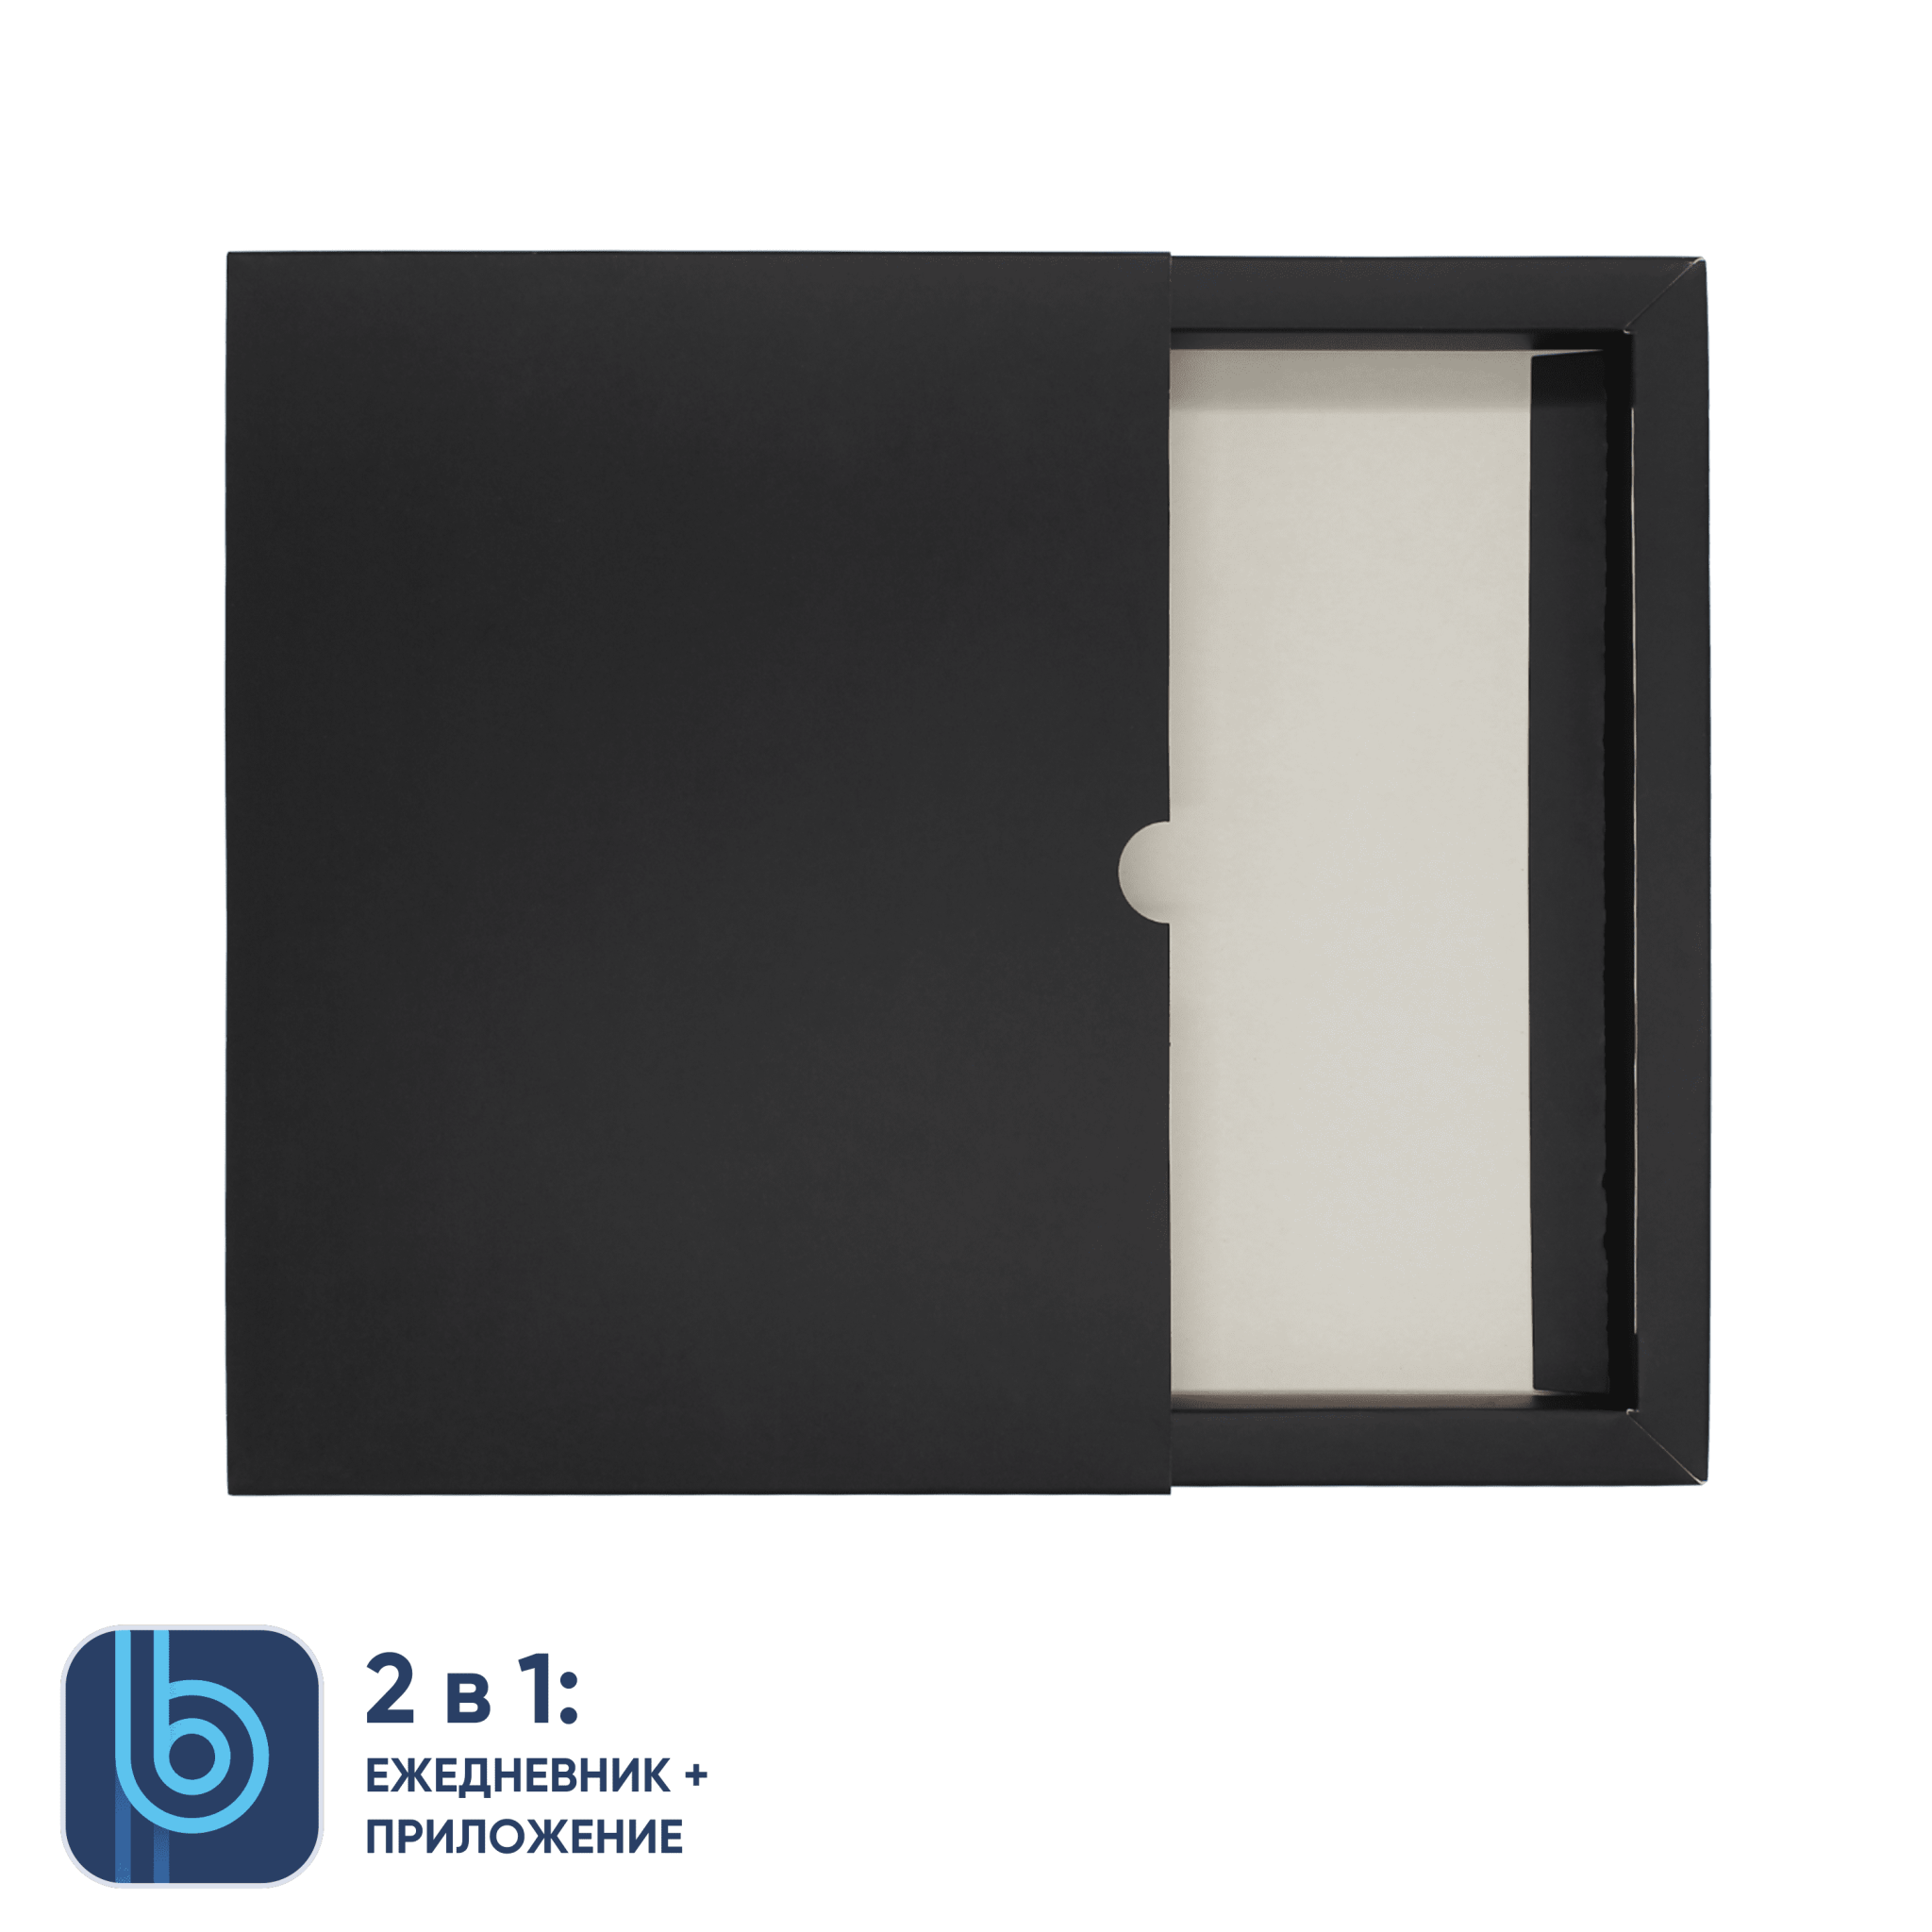 Коробка под ежедневник Bplanner (черный), черный, картон